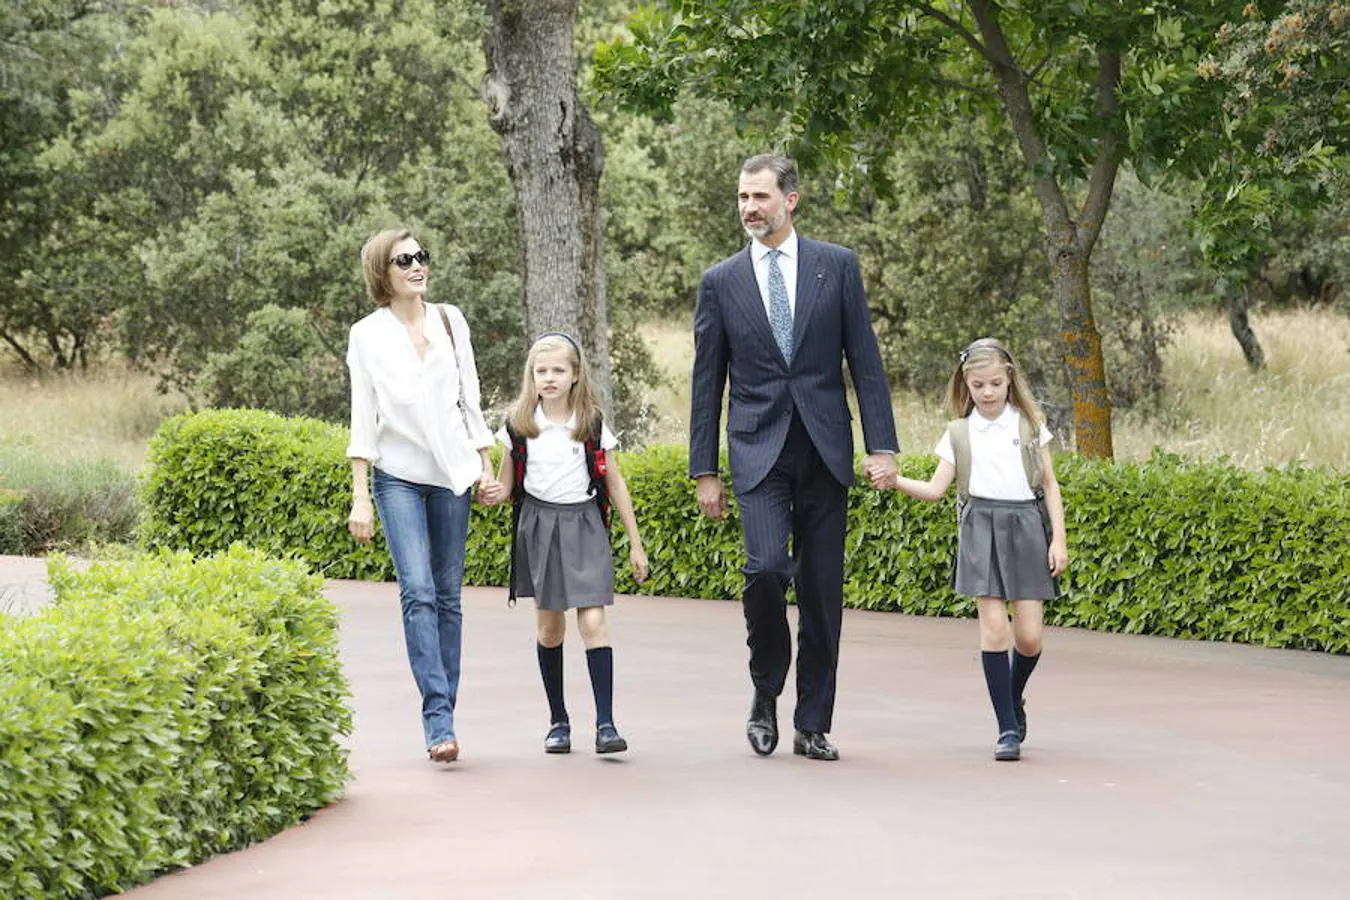 Como todos los meses de septiembre, los Reyes acompañaron ayer a sus hijas, la Princesa Leonor y la Infanta Sofía, en su primer día de clase tras las vacaciones de verano. 